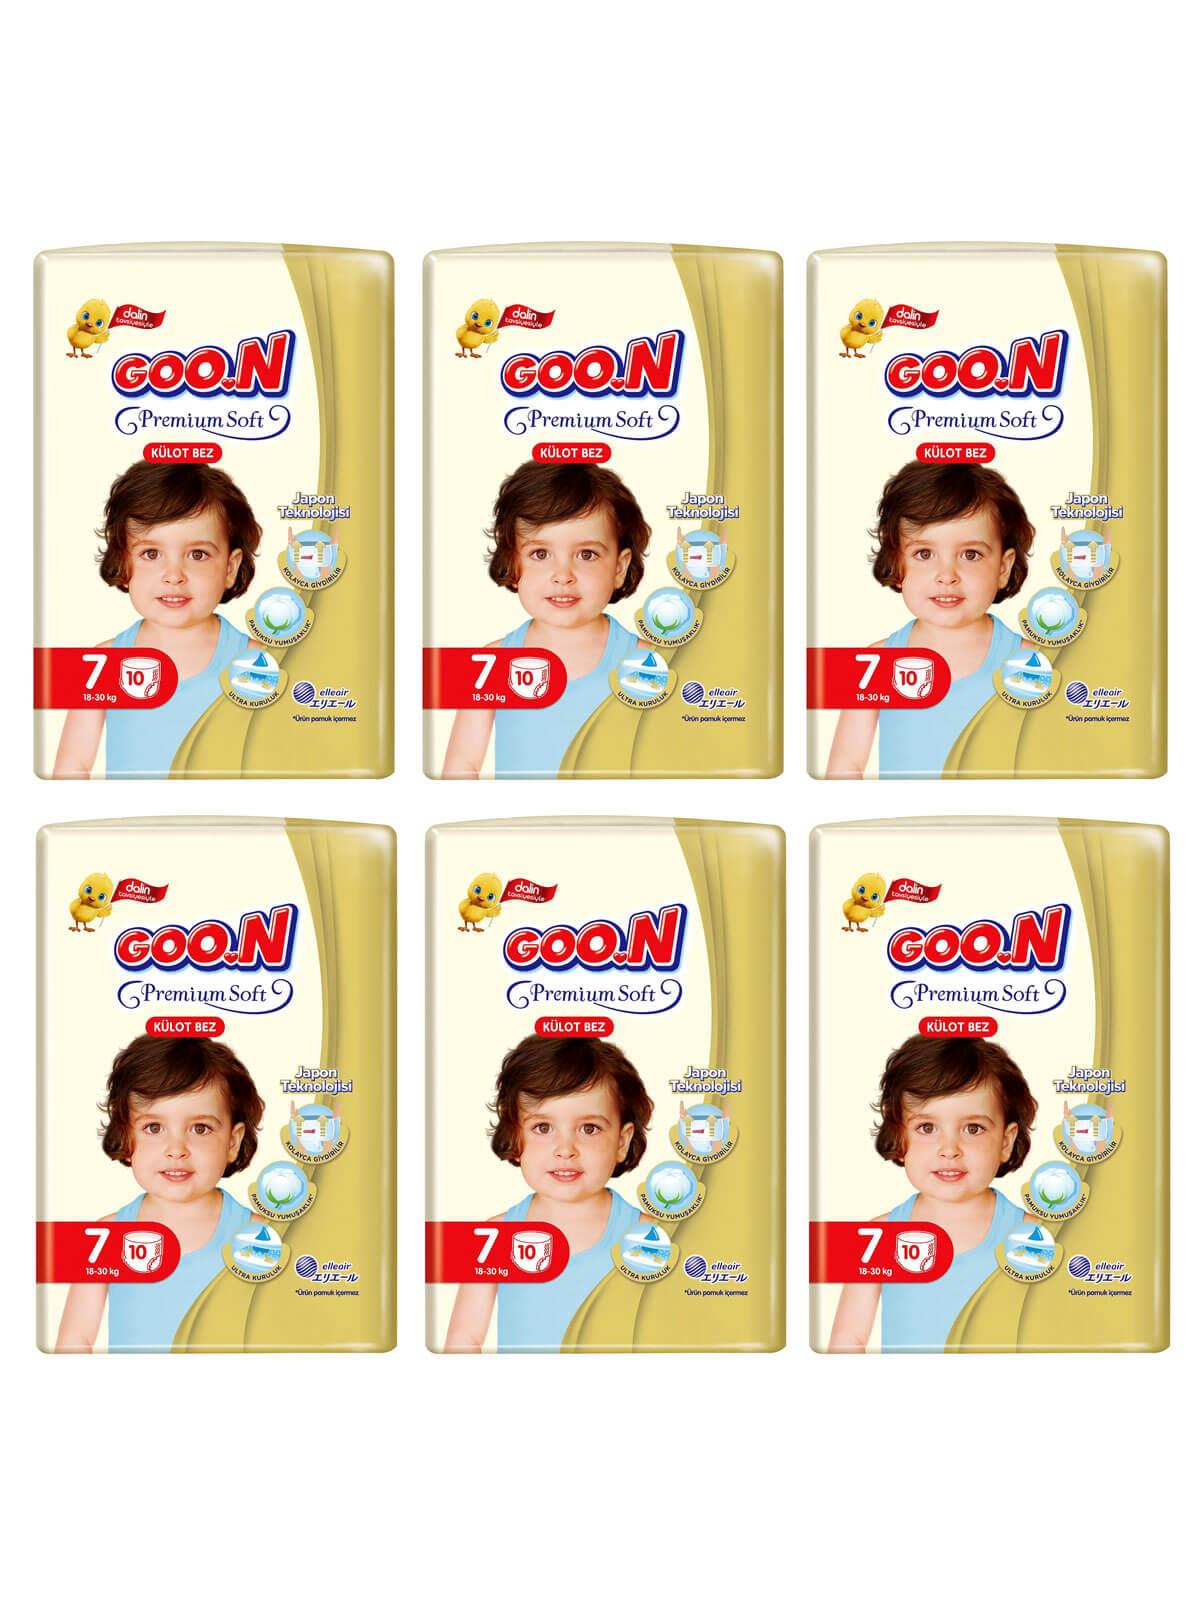 Goon Premium Soft Eko Külot Bebek Bezi 7 Beden 60 Adet Fırsat Paketi